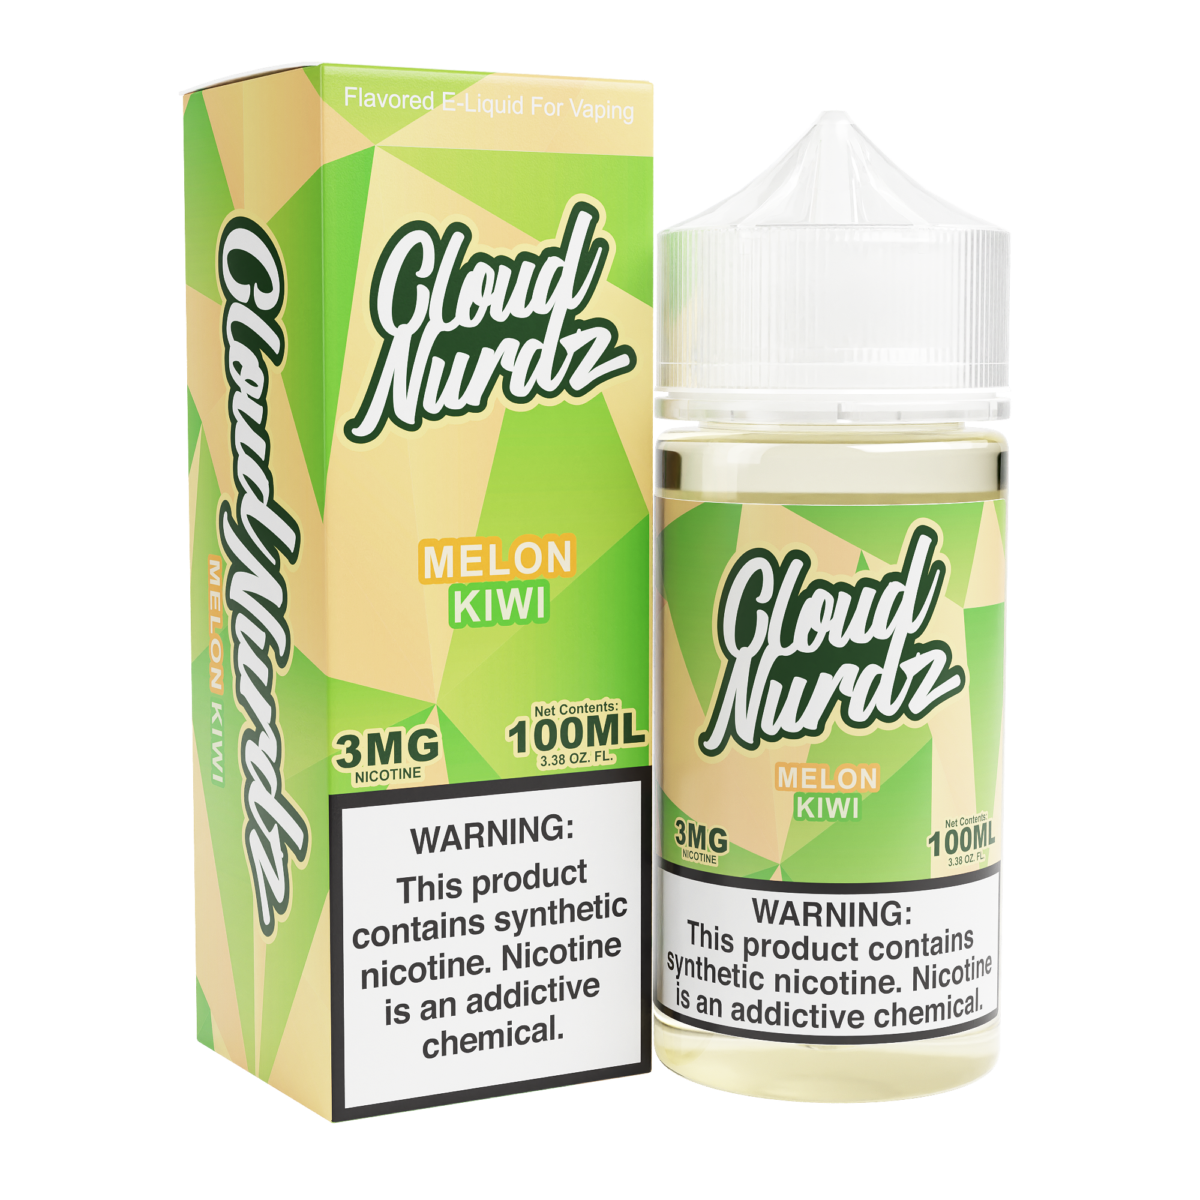 Cloud Nurdz Series E-Liquid 100mL Kiwi Melon with packaging